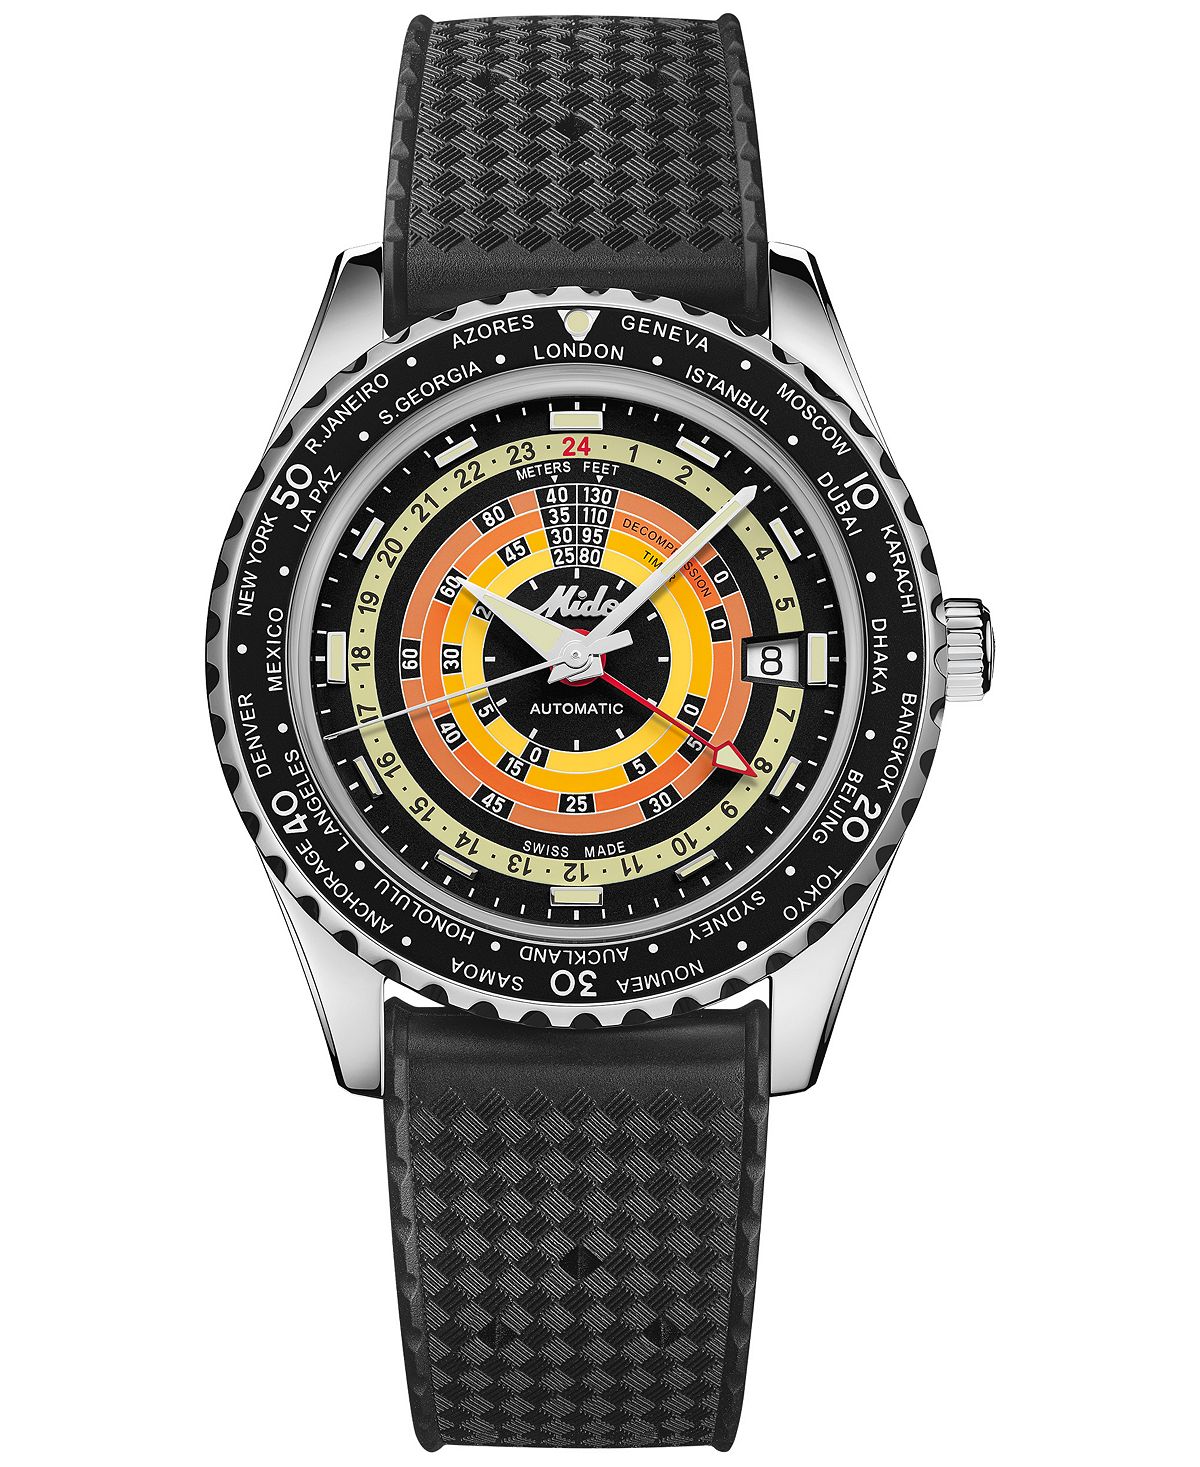 Часы унисекс, швейцарские автоматические часы Ocean Star с декомпрессией, мировое время, черный каучуковый ремешок, 41 мм Mido, черный